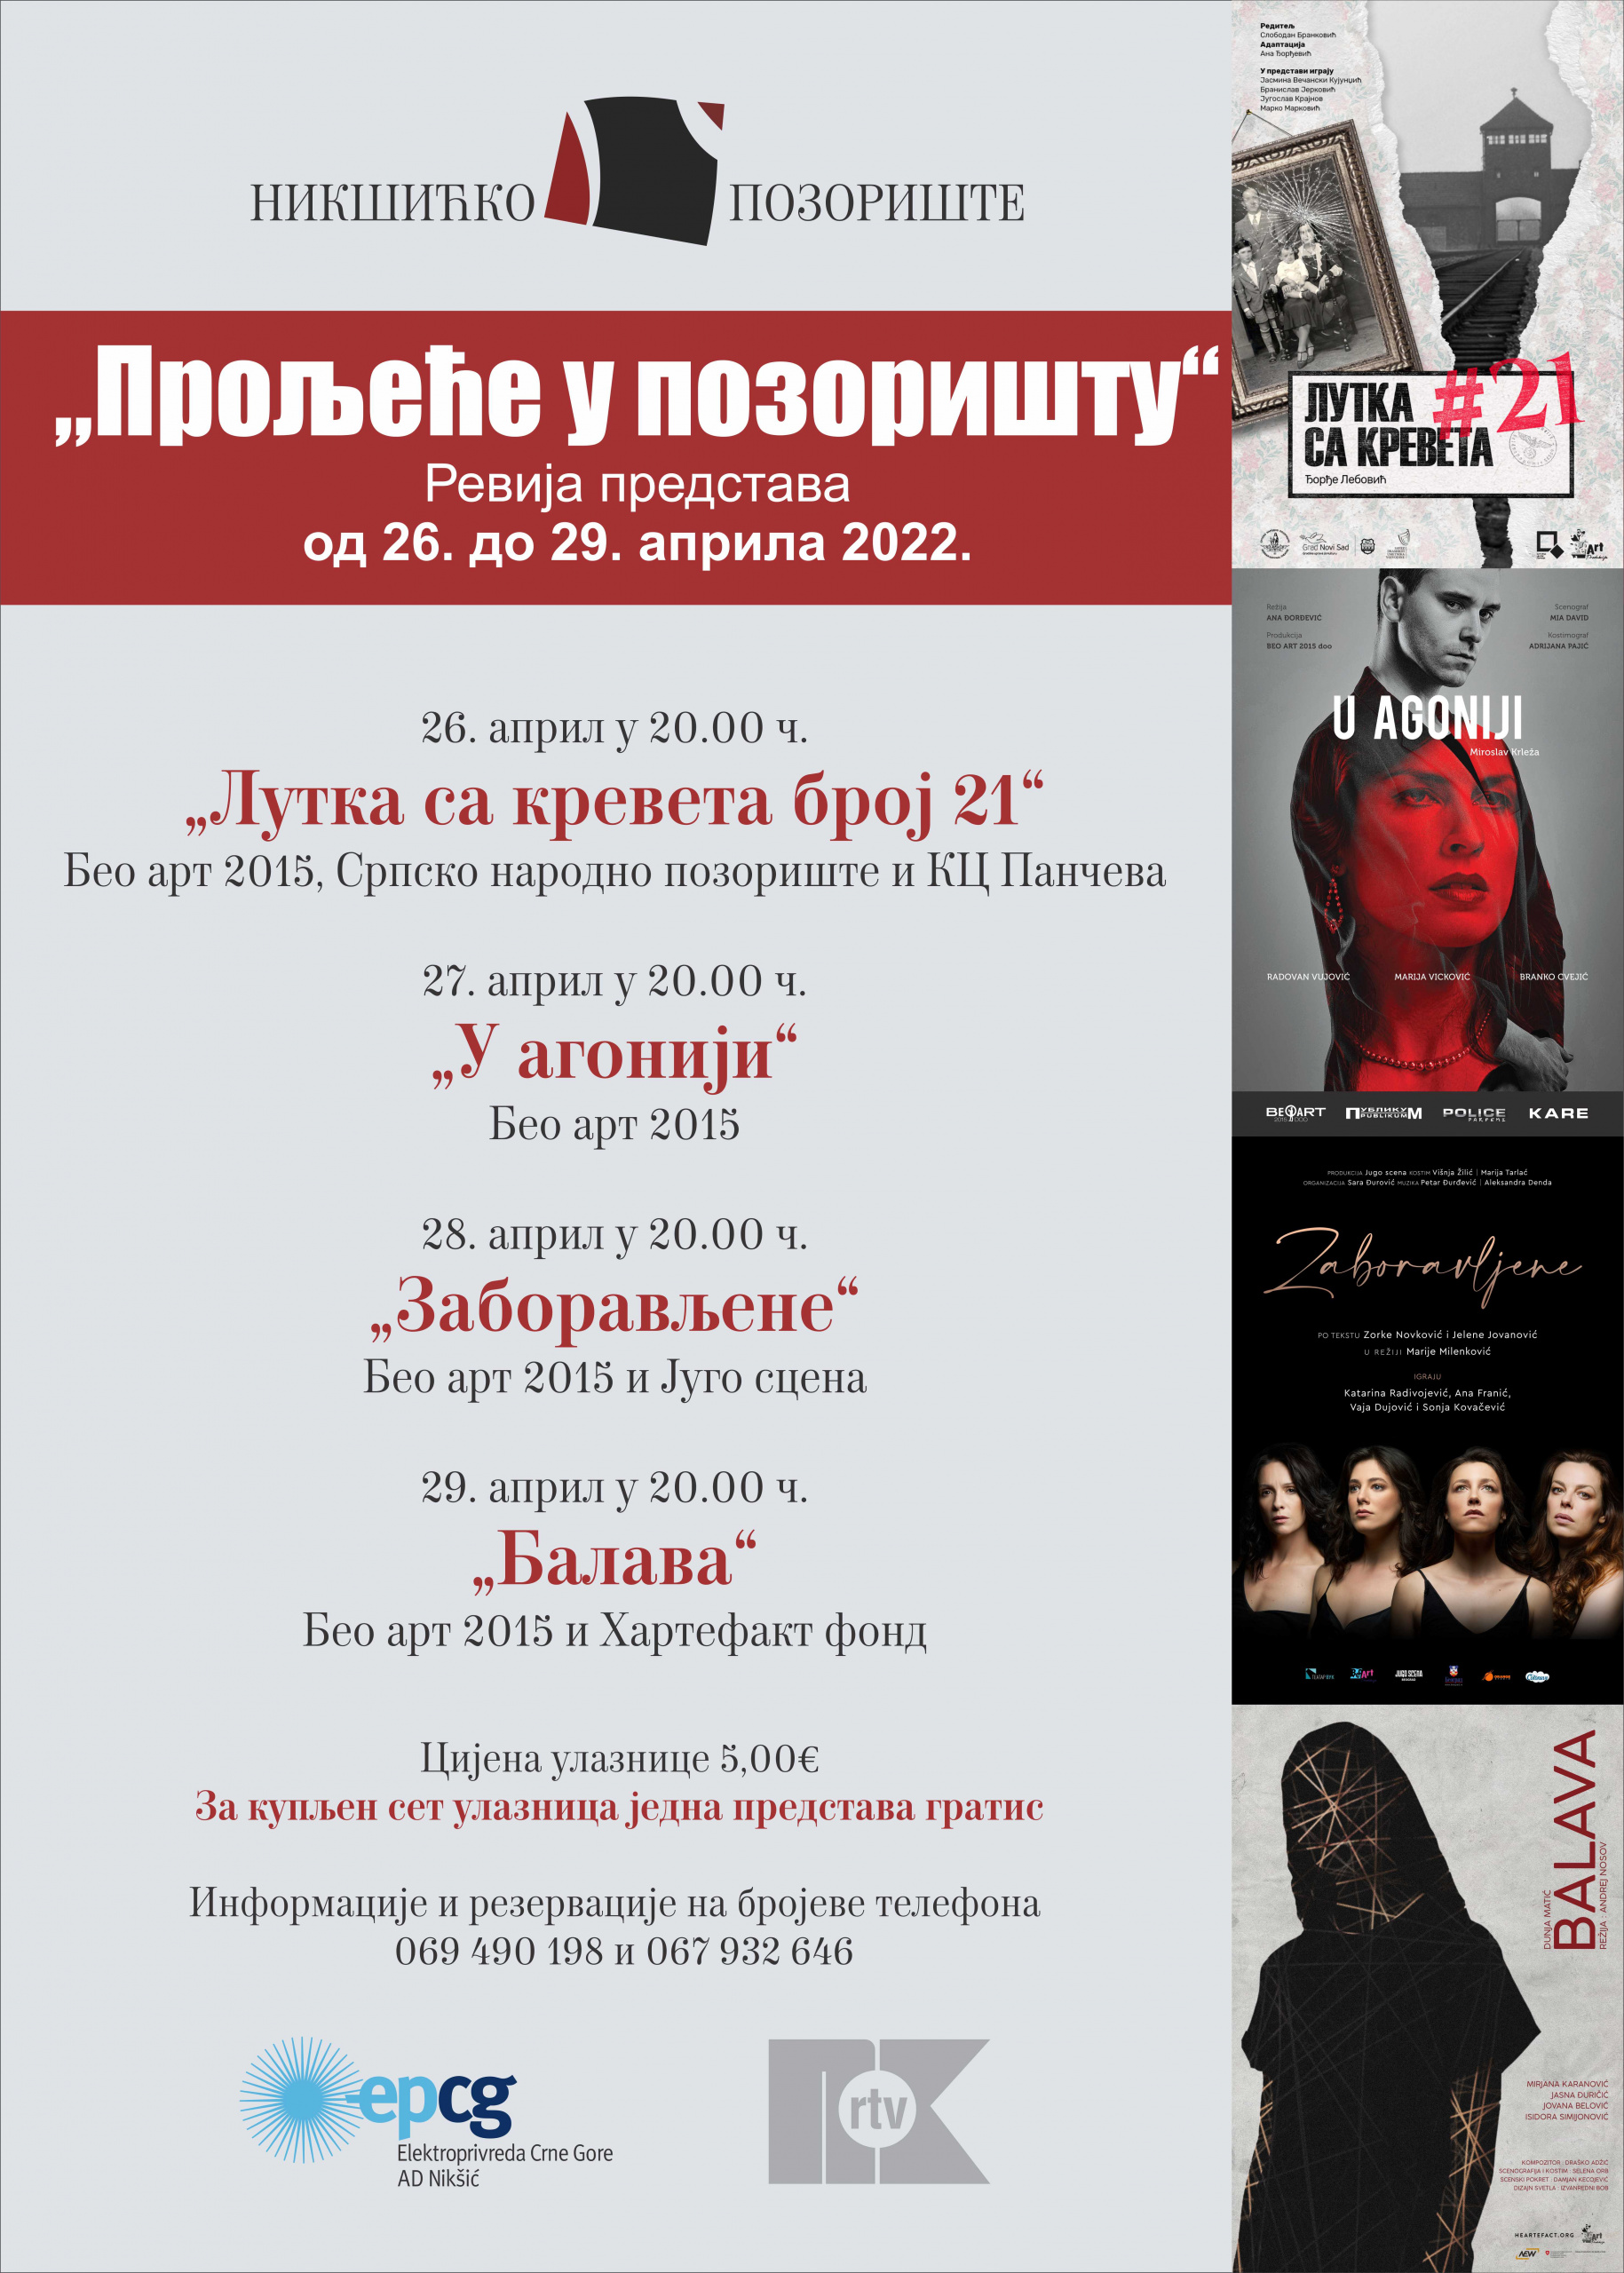 Revija predstava Beo arta u Nikšićkom pozorištu od 26. do 28. aprila